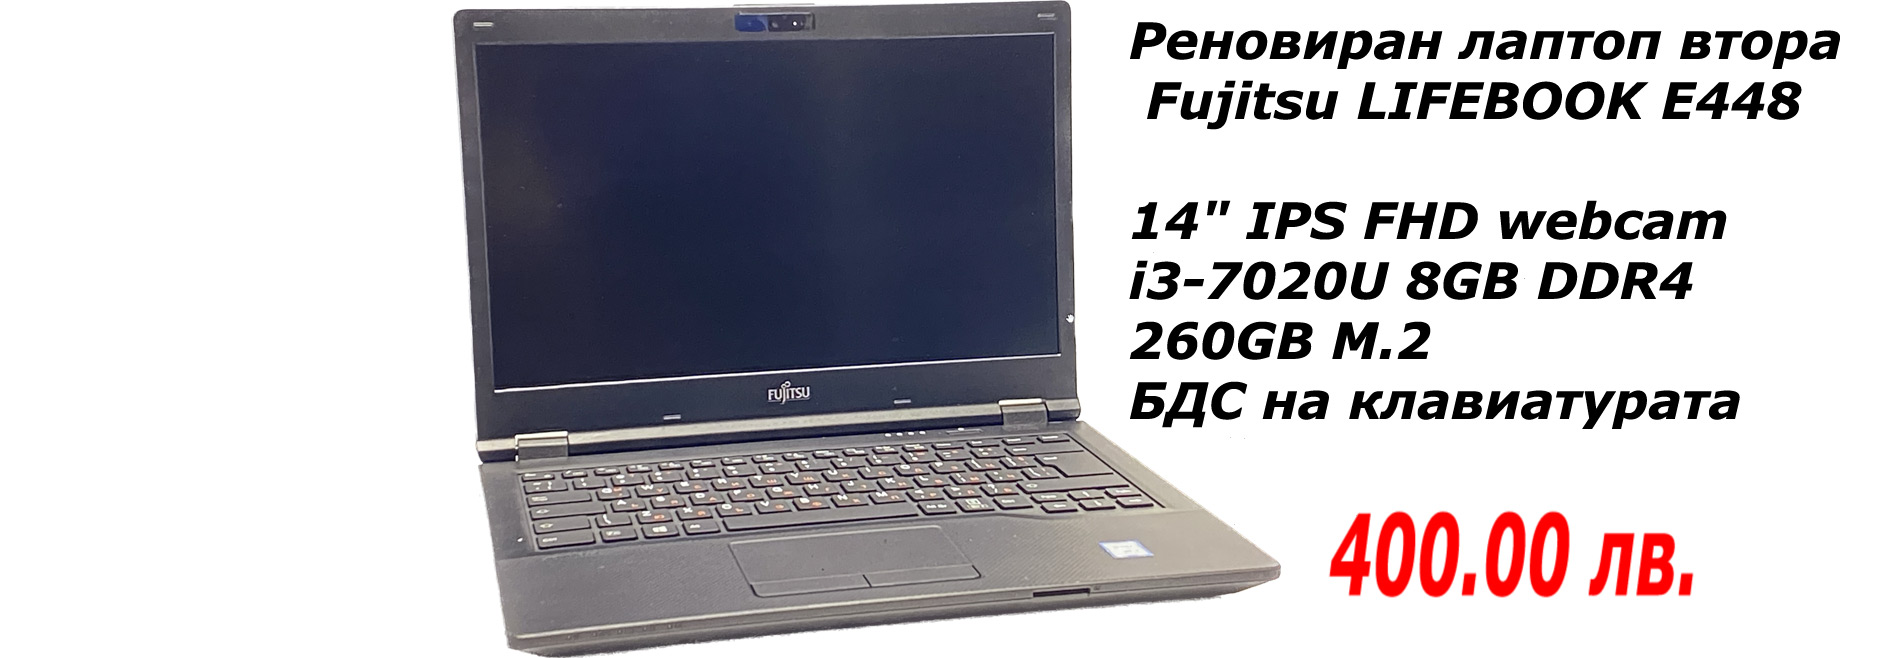 Fujitsu Lifebook E448